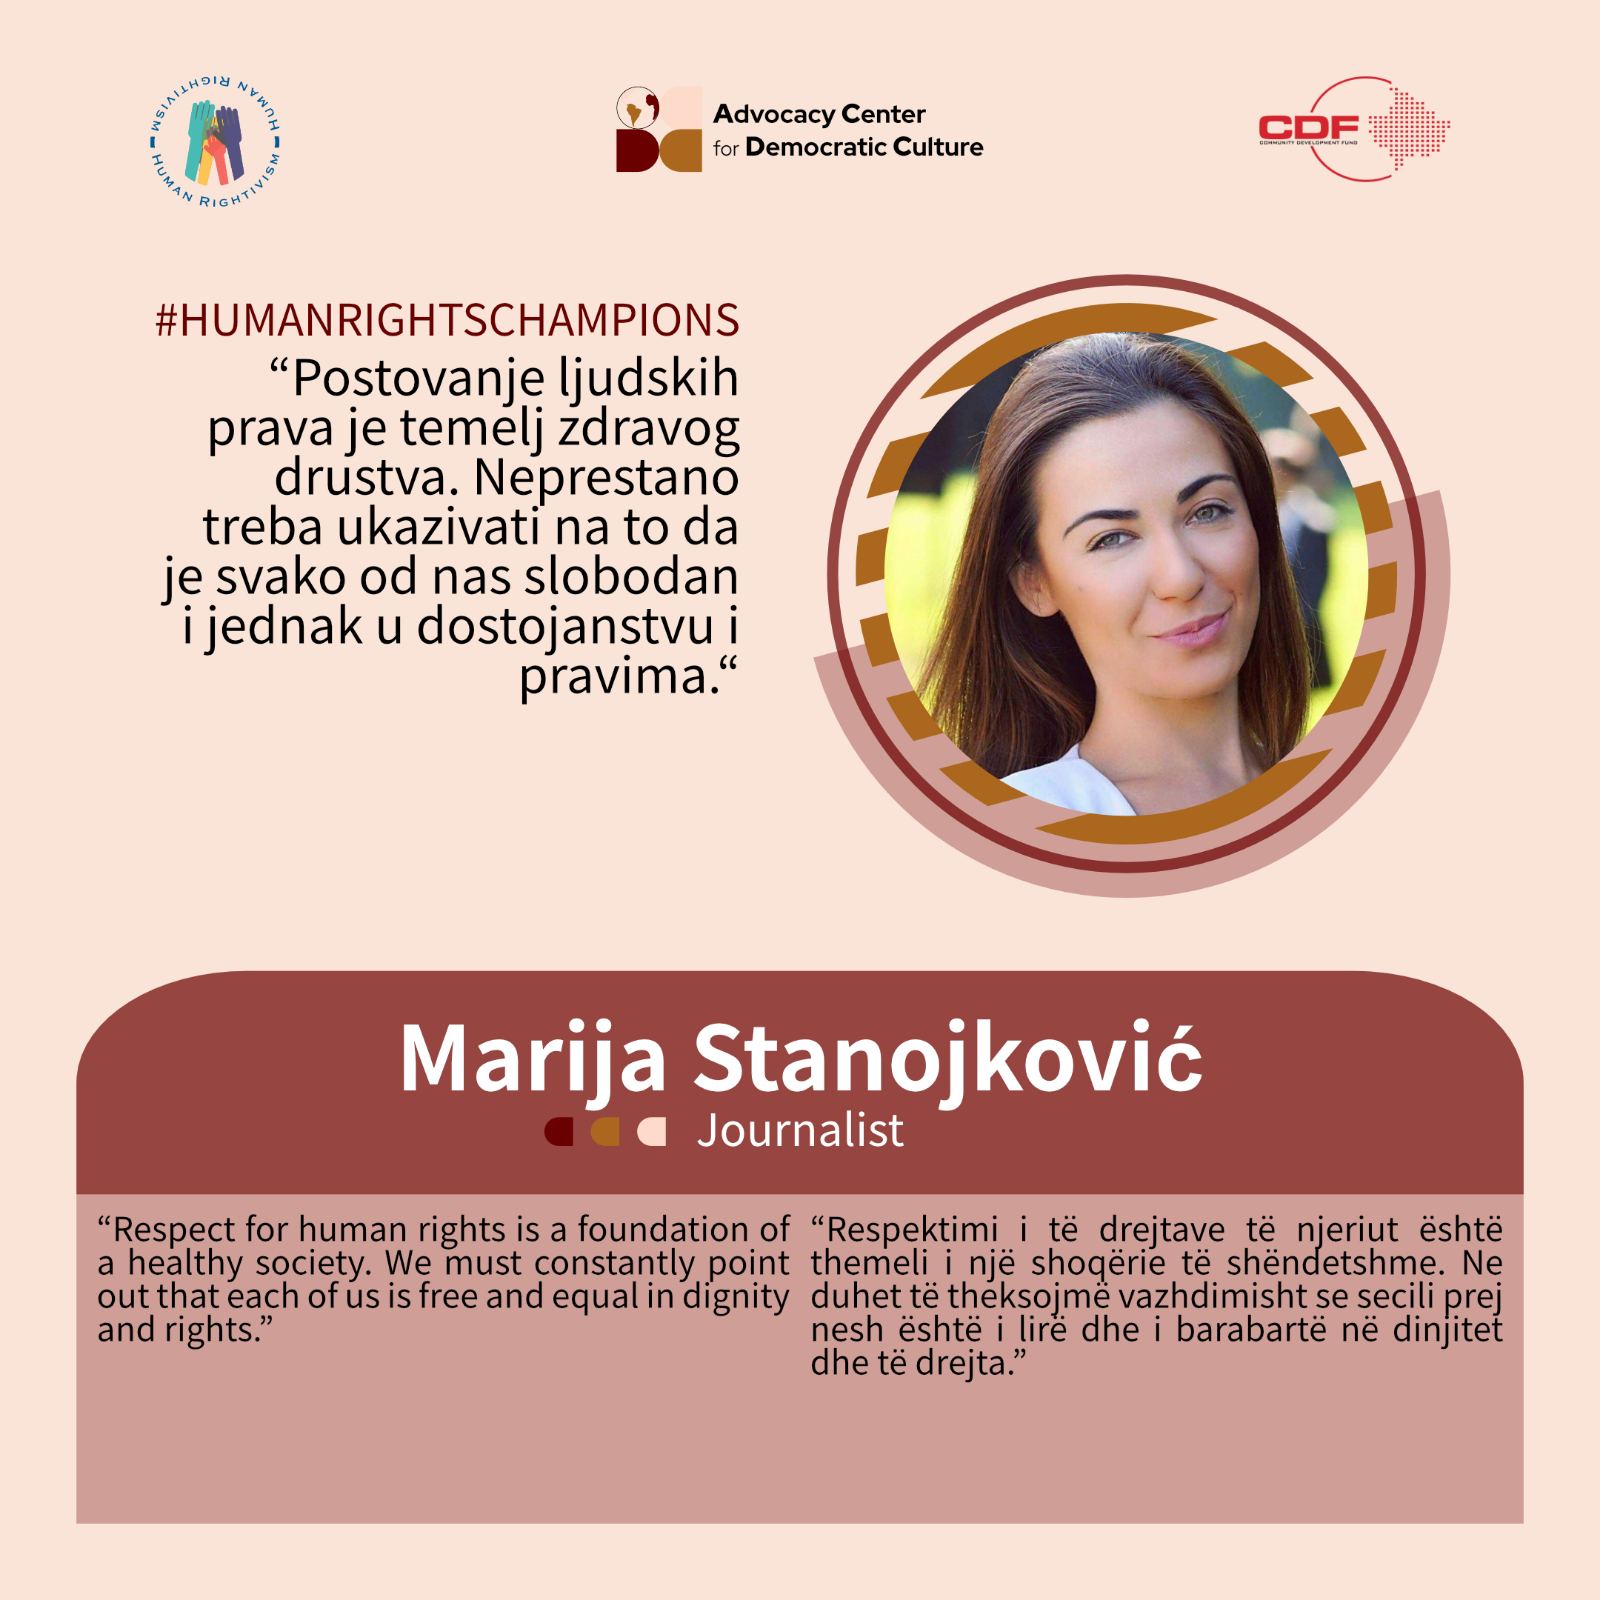 kampanja-promocije-ljudskih-prava-humanrightschampions-marija-stanojkovic